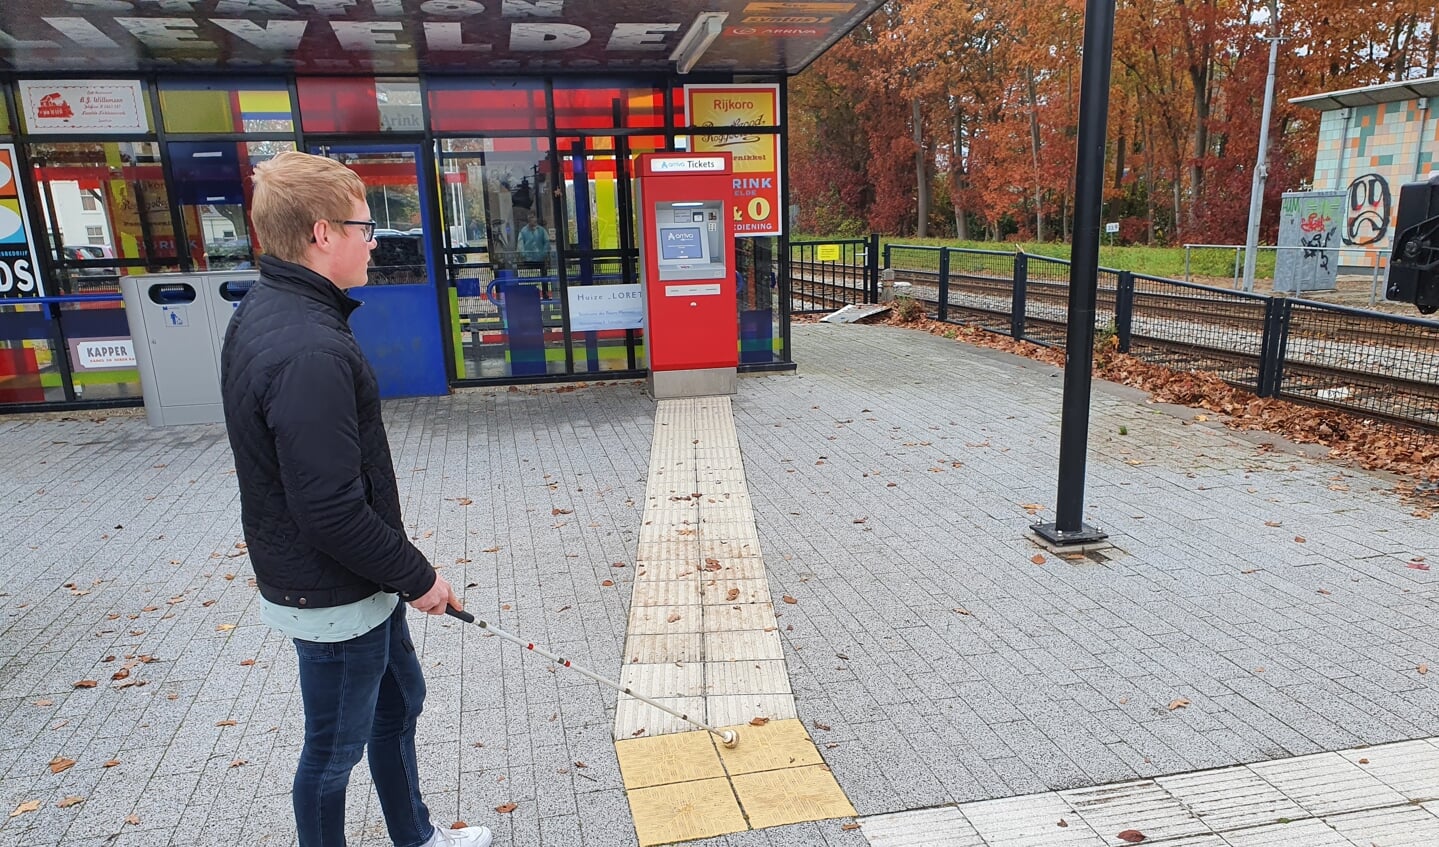 Jeffrey voelt aan de gele rubberen tegels dat hij op een afslag staat, richting kaartautomaat. Foto: Henri Walterbos